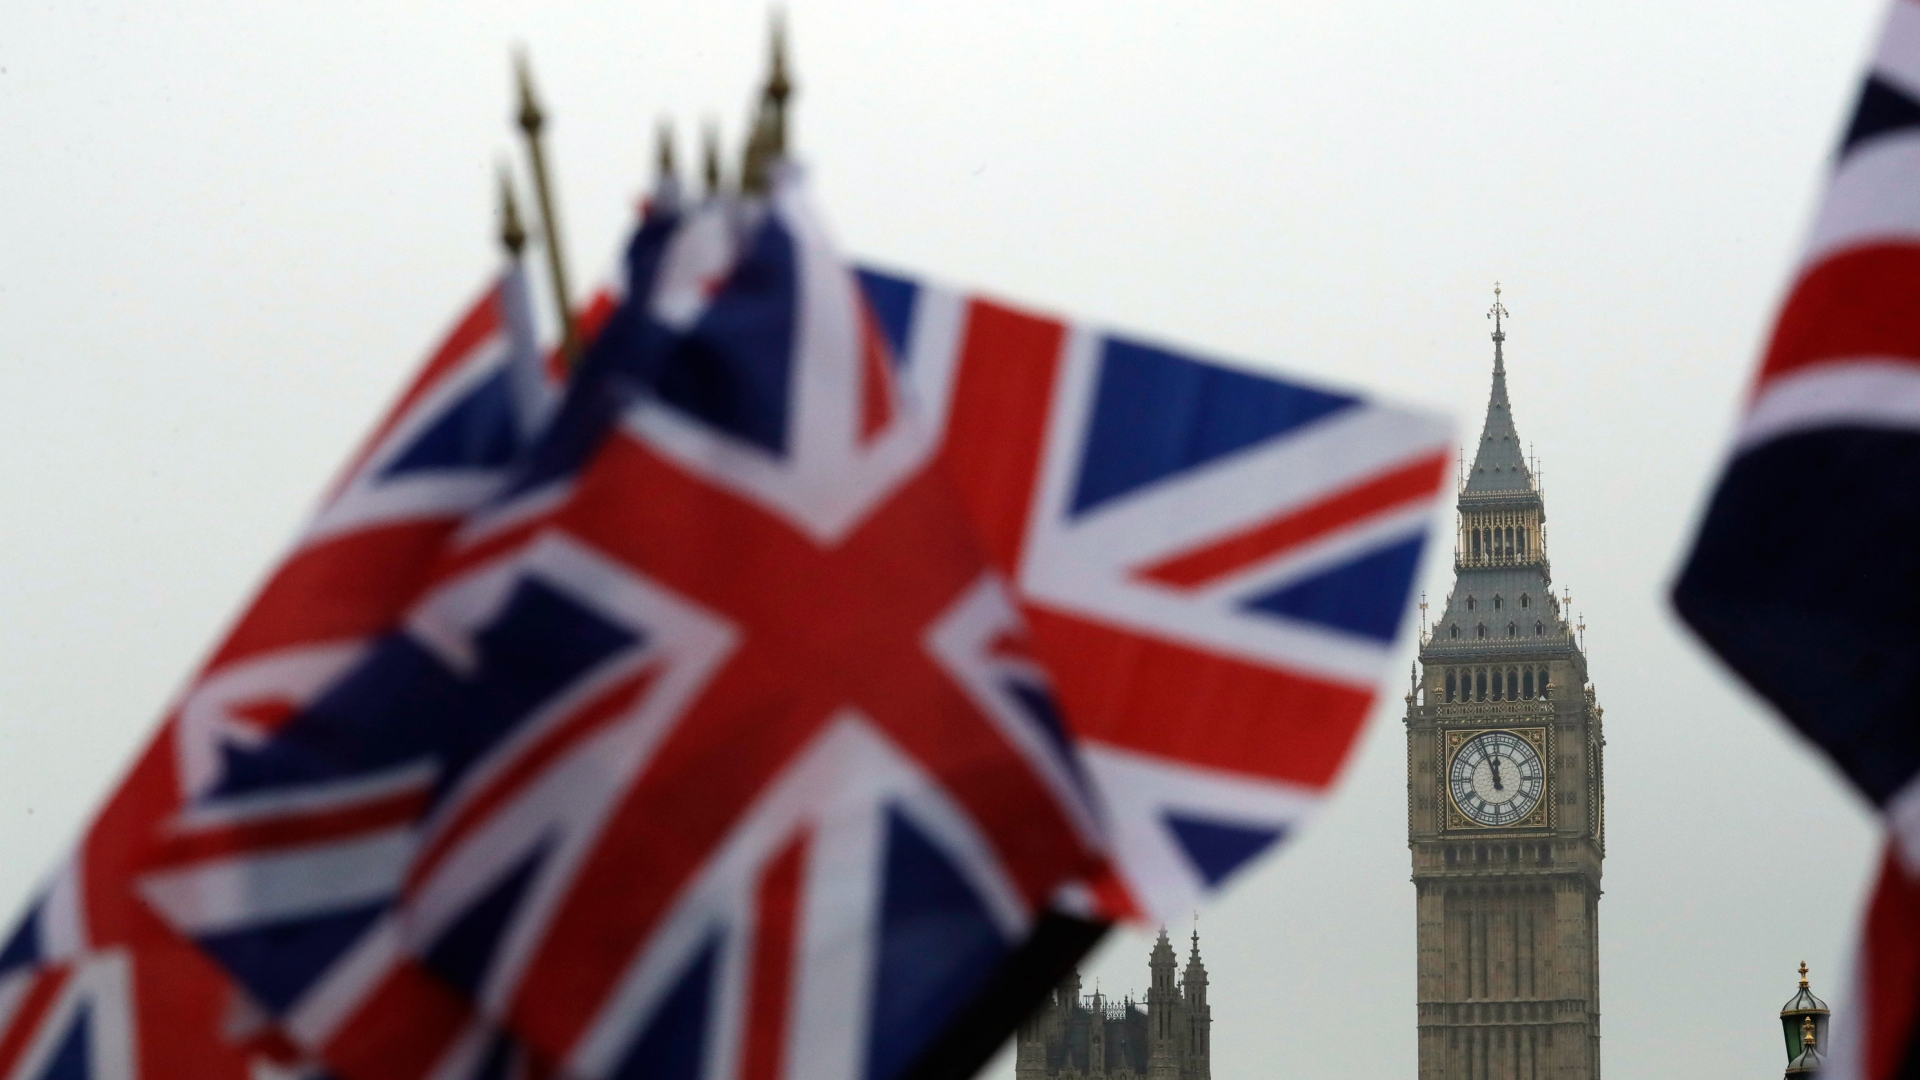 Britische Flaggen wehen in der Nähe des berühmten Uhrturms Big Ben. Der Uhrturm ist Teil des Palace of Westminster, in dem das britische Parlament tagt. | Bildquelle: dpa